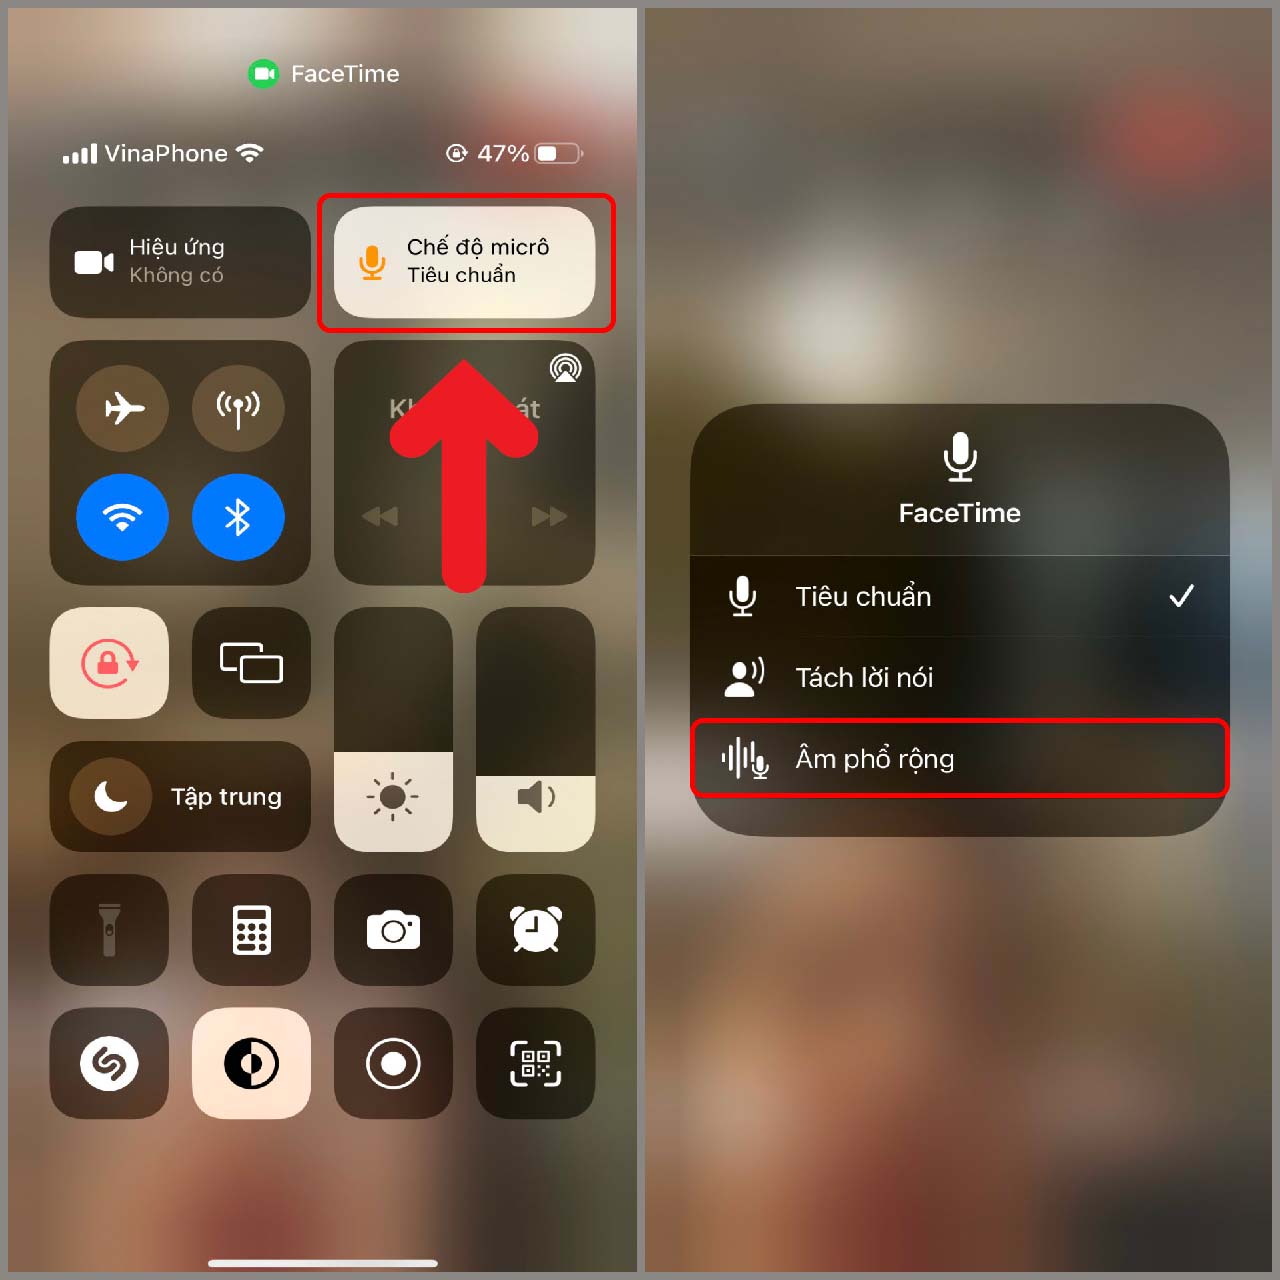 Thay đổi âm thanh FaceTime iPhone: Với tính năng mới trên iOS 16, bạn có thể thay đổi âm thanh FaceTime iPhone dễ dàng hơn bao giờ hết. Tùy chỉnh âm thanh FaceTime giúp cuộc trò chuyện của bạn thêm phần thú vị và sống động hơn bao giờ hết. Hãy xem hình ảnh liên quan để tìm hiểu thêm về tính năng này!